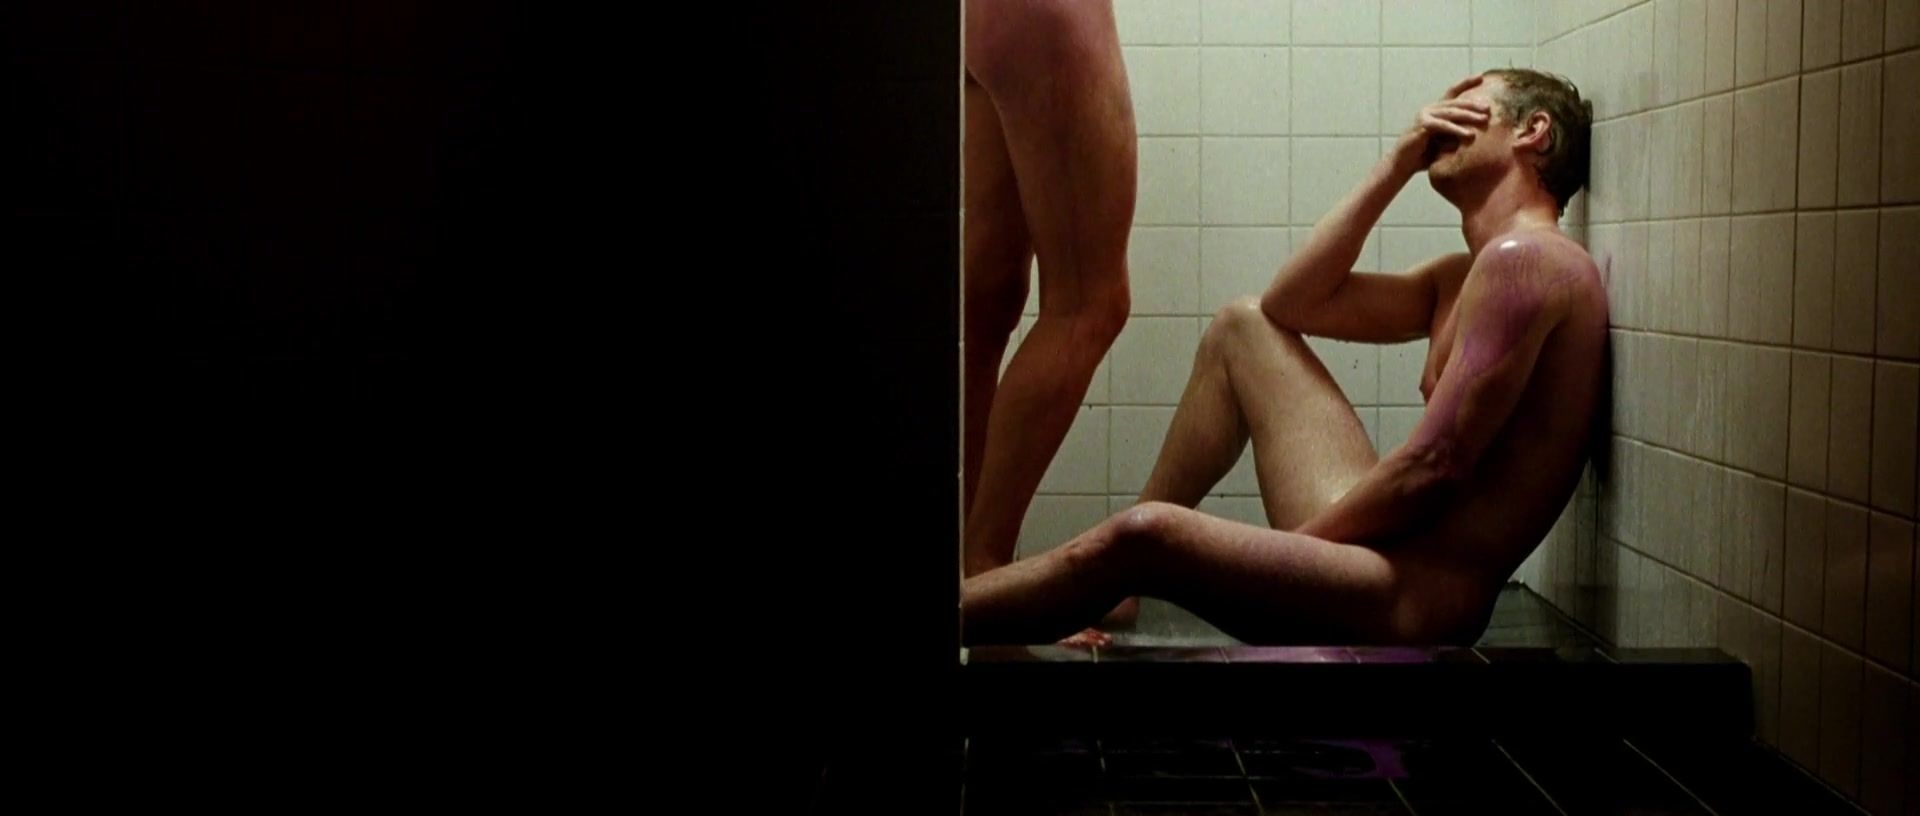 ShesFreaky Sex Scenes - Anna Drijver - Komt een vrouw bij de dokter (2009) High Heels - 1